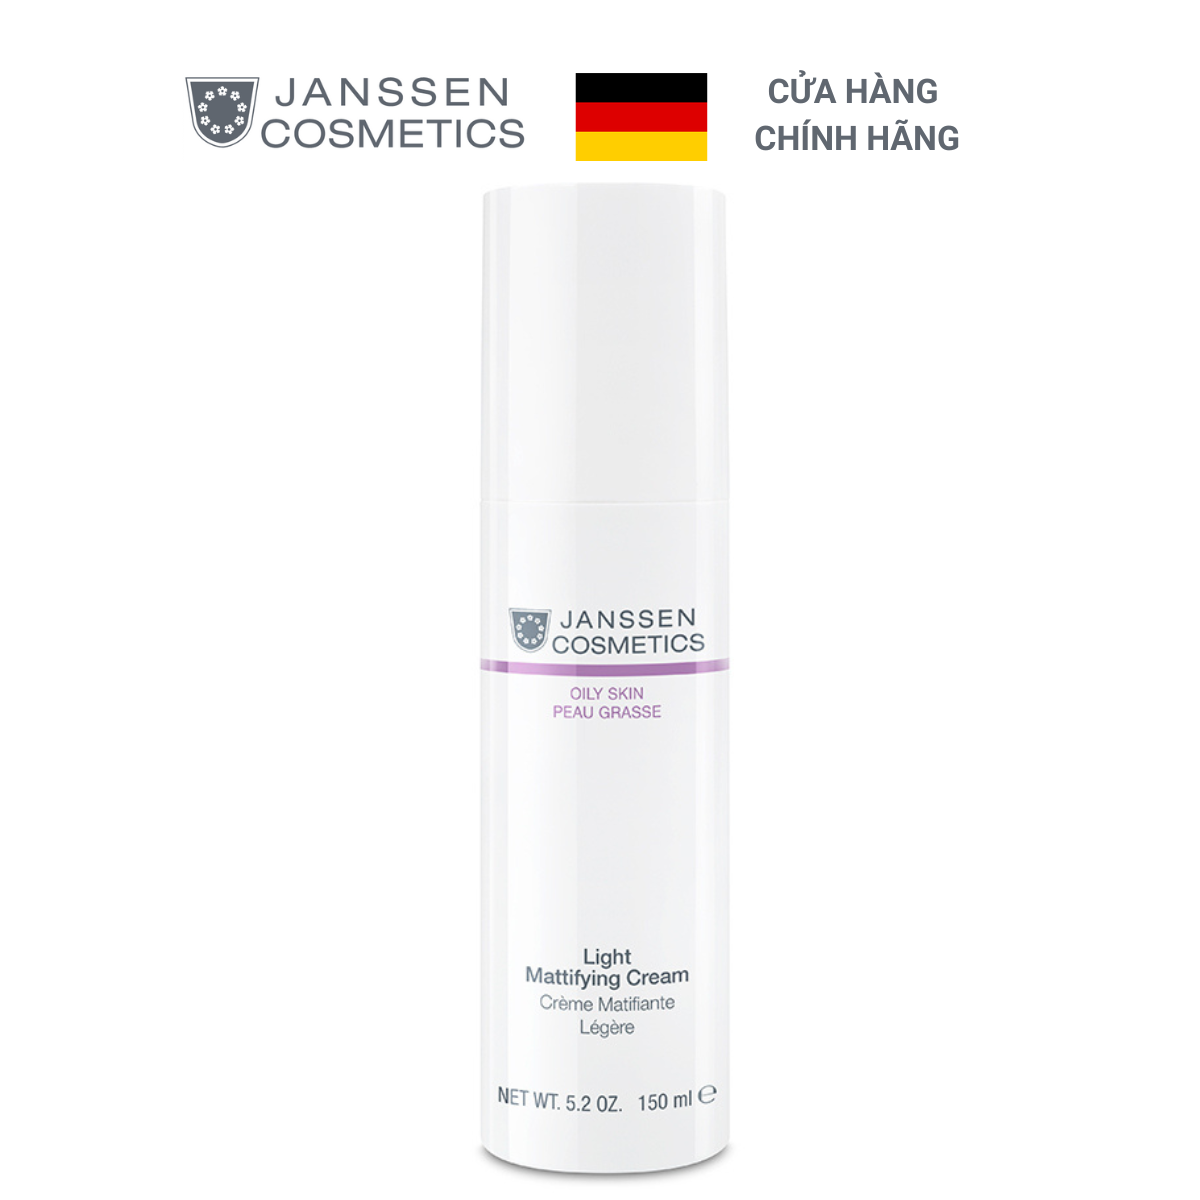  Kem chống nhờn và chăm sóc 24 giờ cho da dầu - Janssen Cosmetics Light Mattifying Cream 150ml 